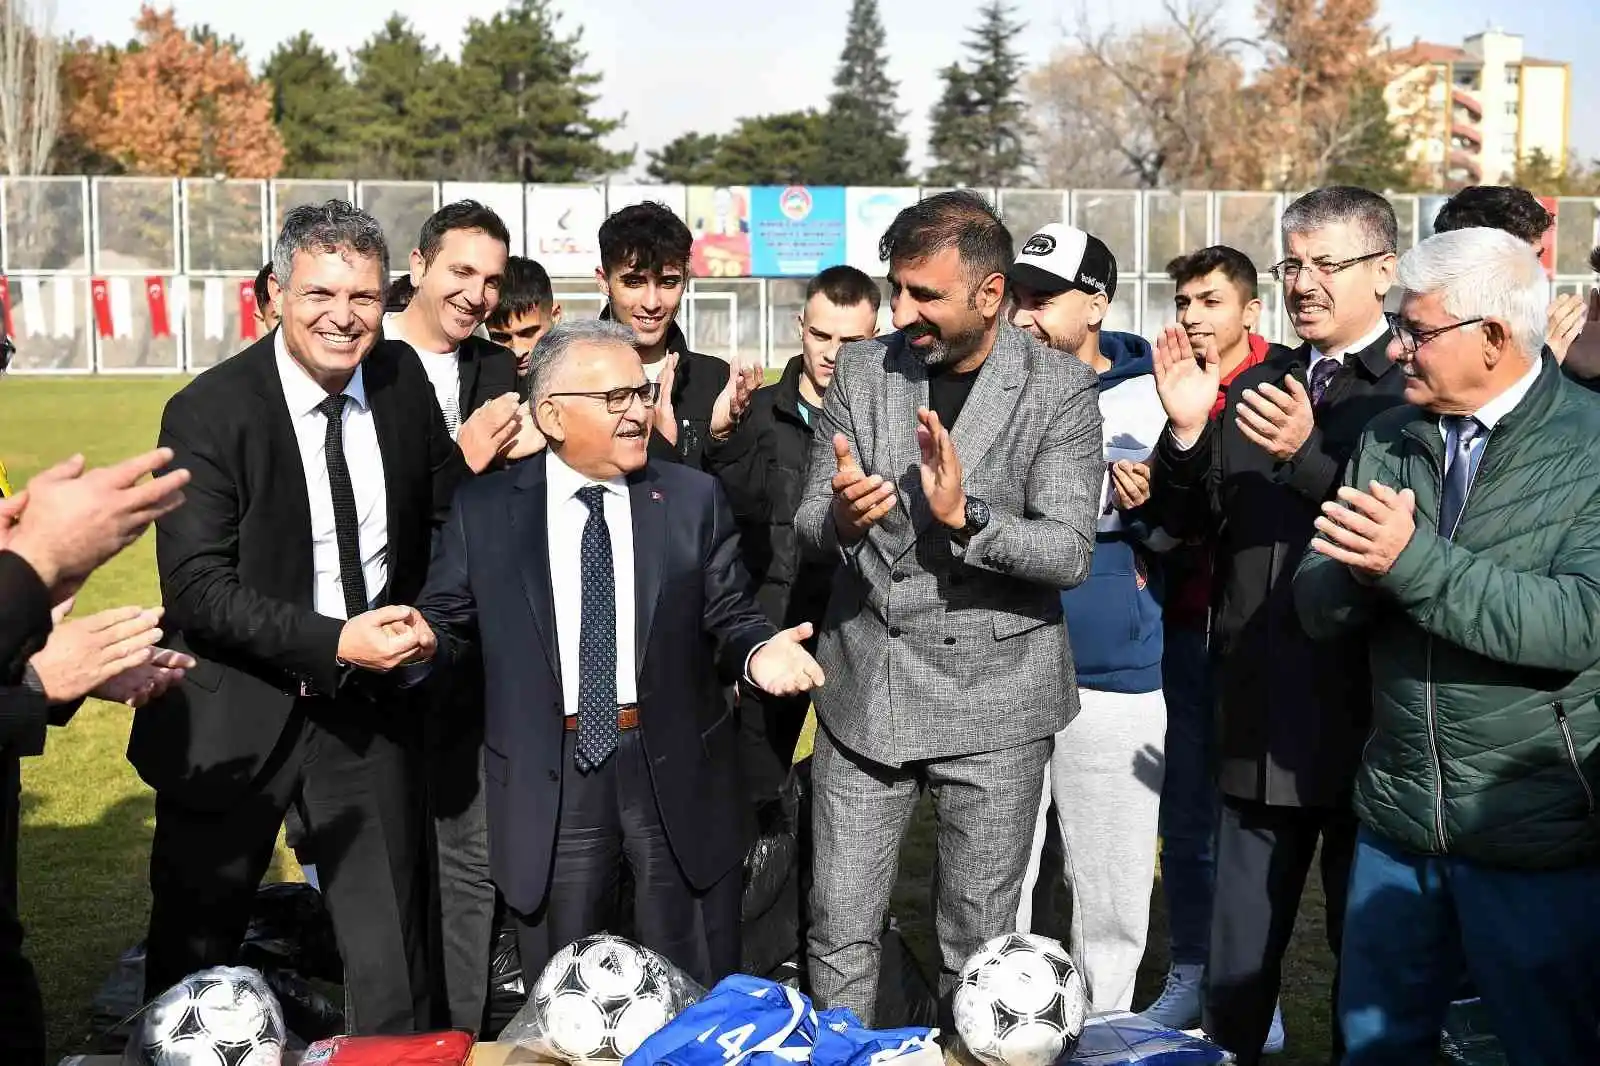 Kayseri Büyükşehir Belediyesi’nden Amatör Kulüplere Malzeme Desteği
